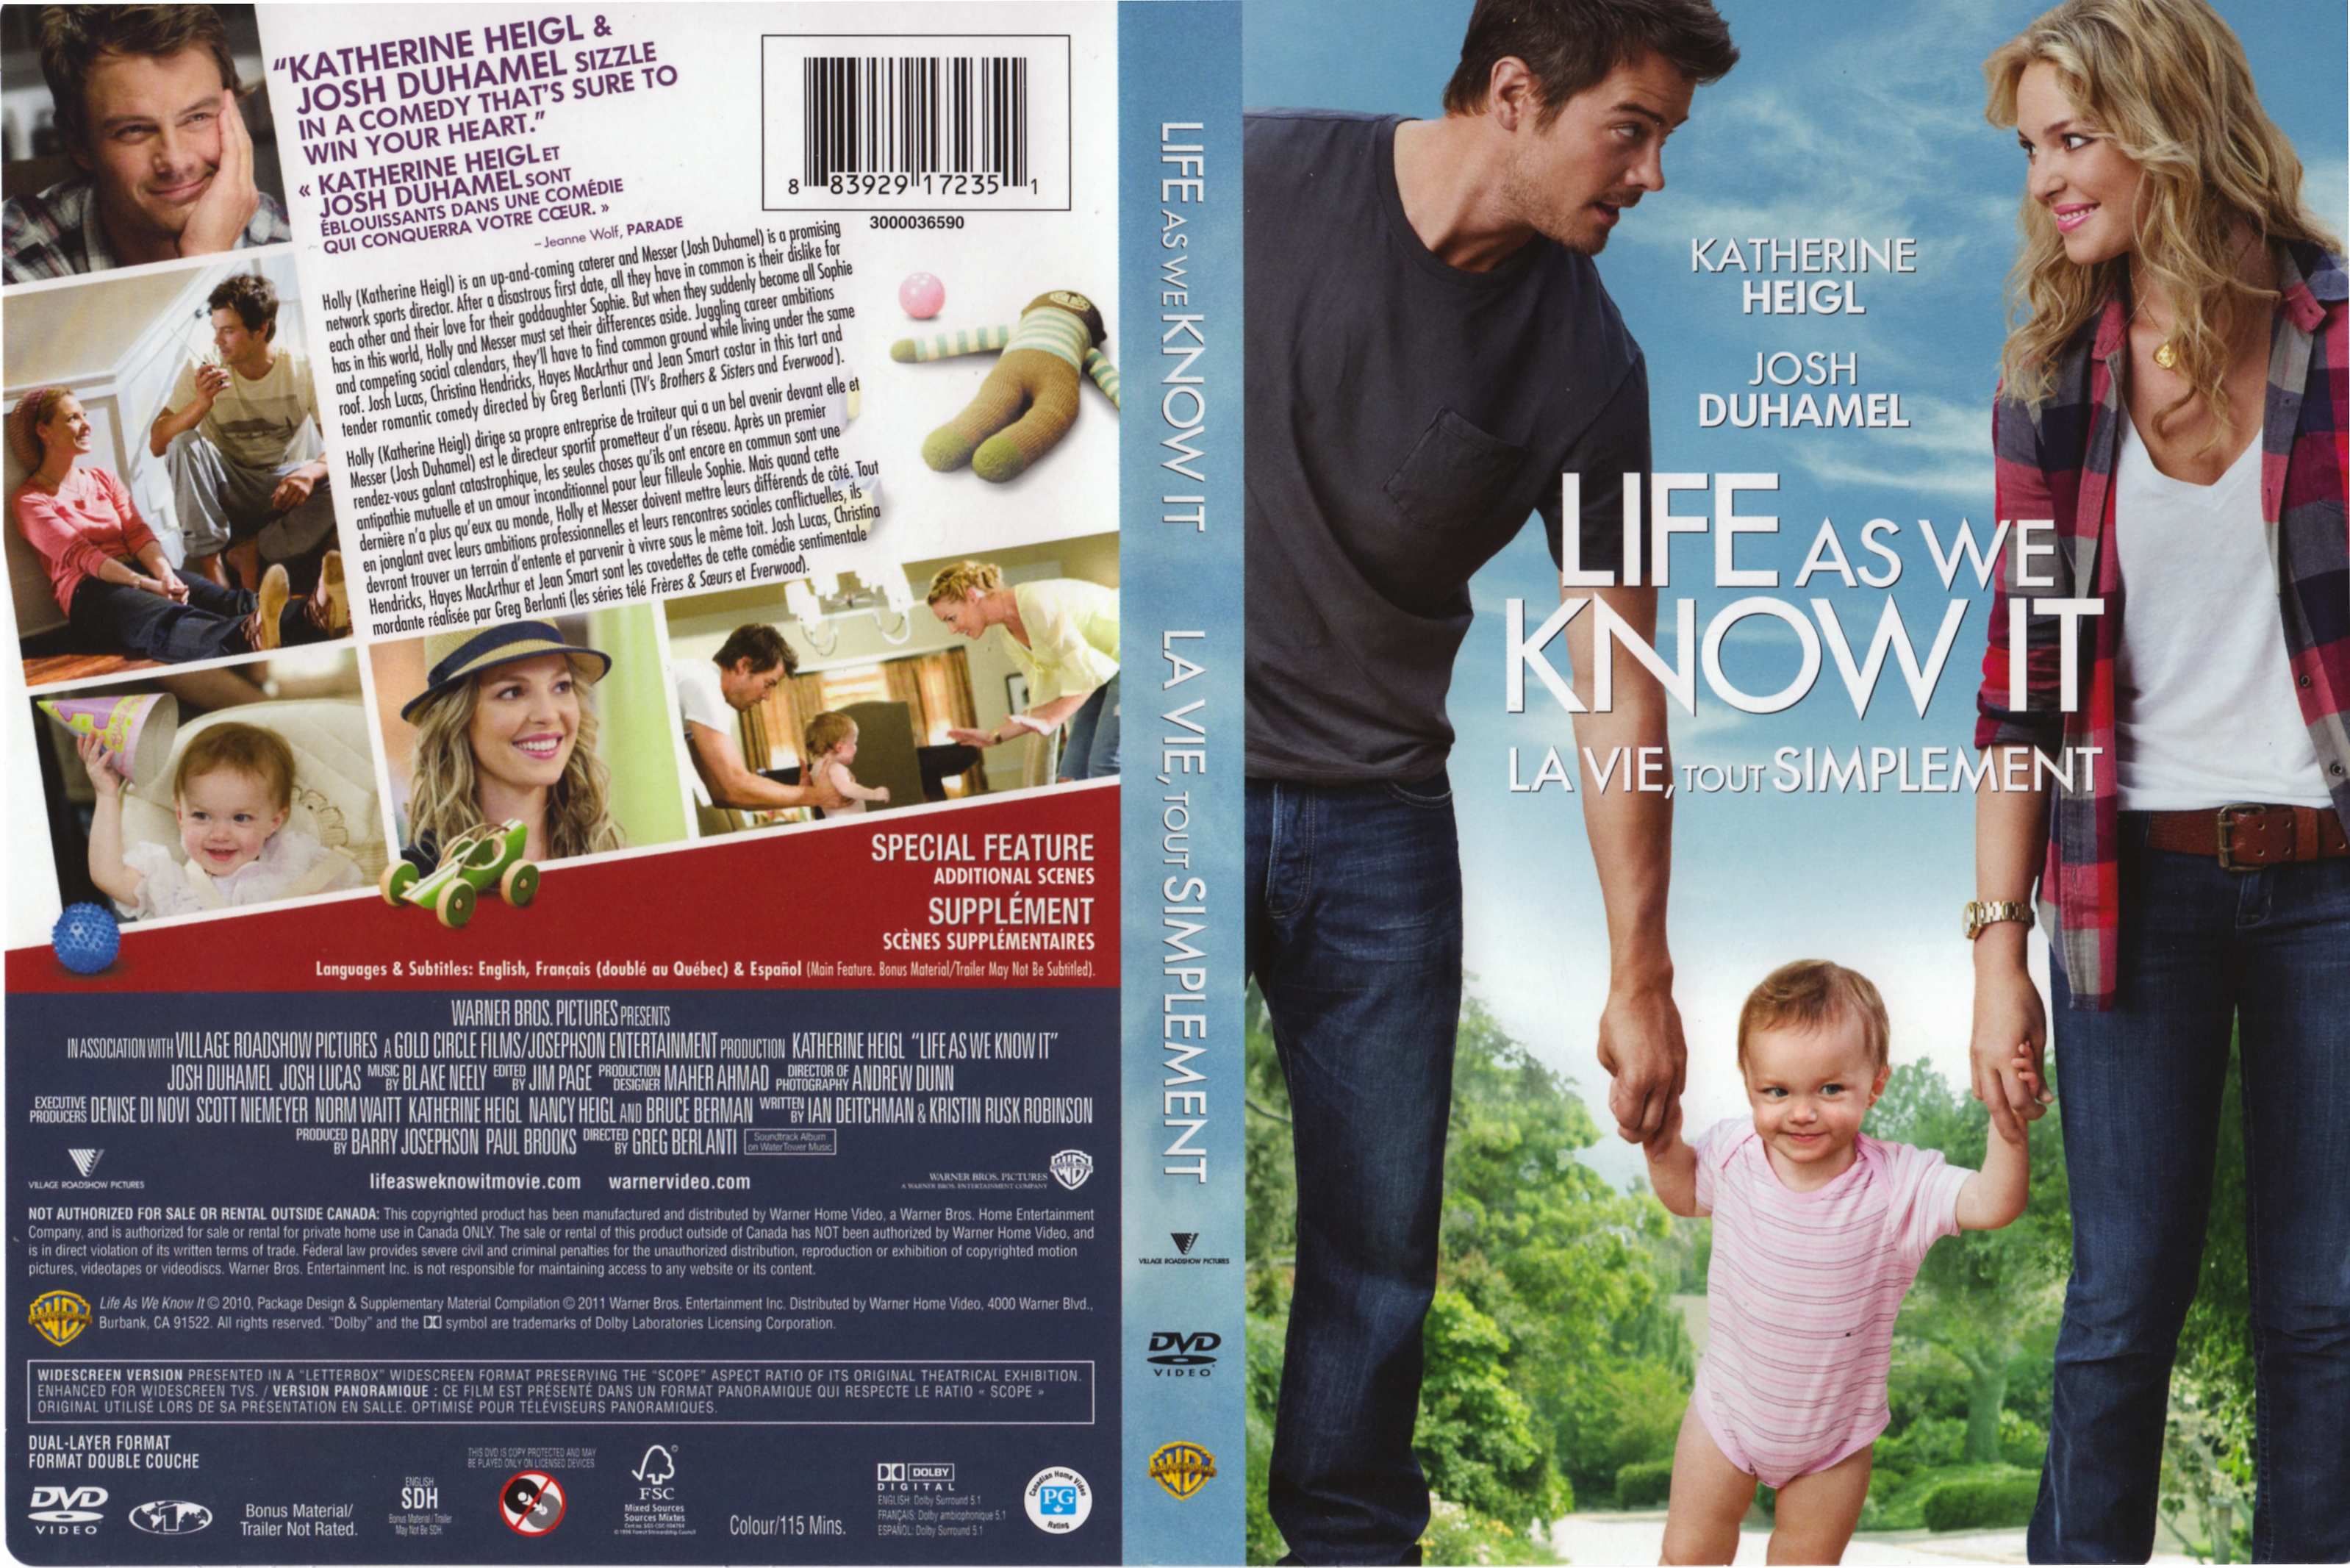 Jaquette DVD Life as we know it - La vie tout simplement (Canadienne)